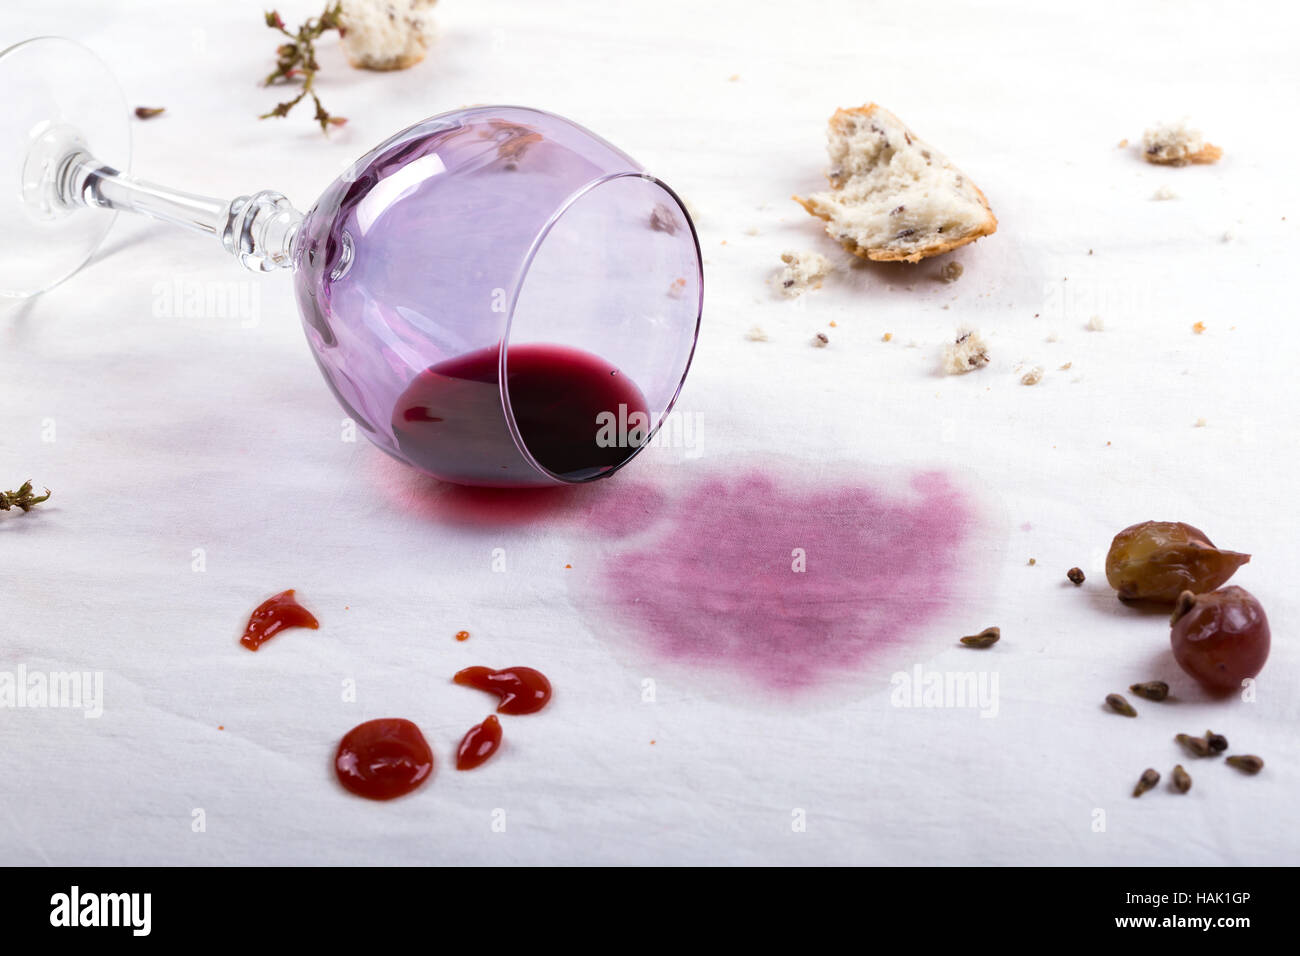 Taches sur la nappe de verre de vin renversé et de l'alimentation Banque D'Images